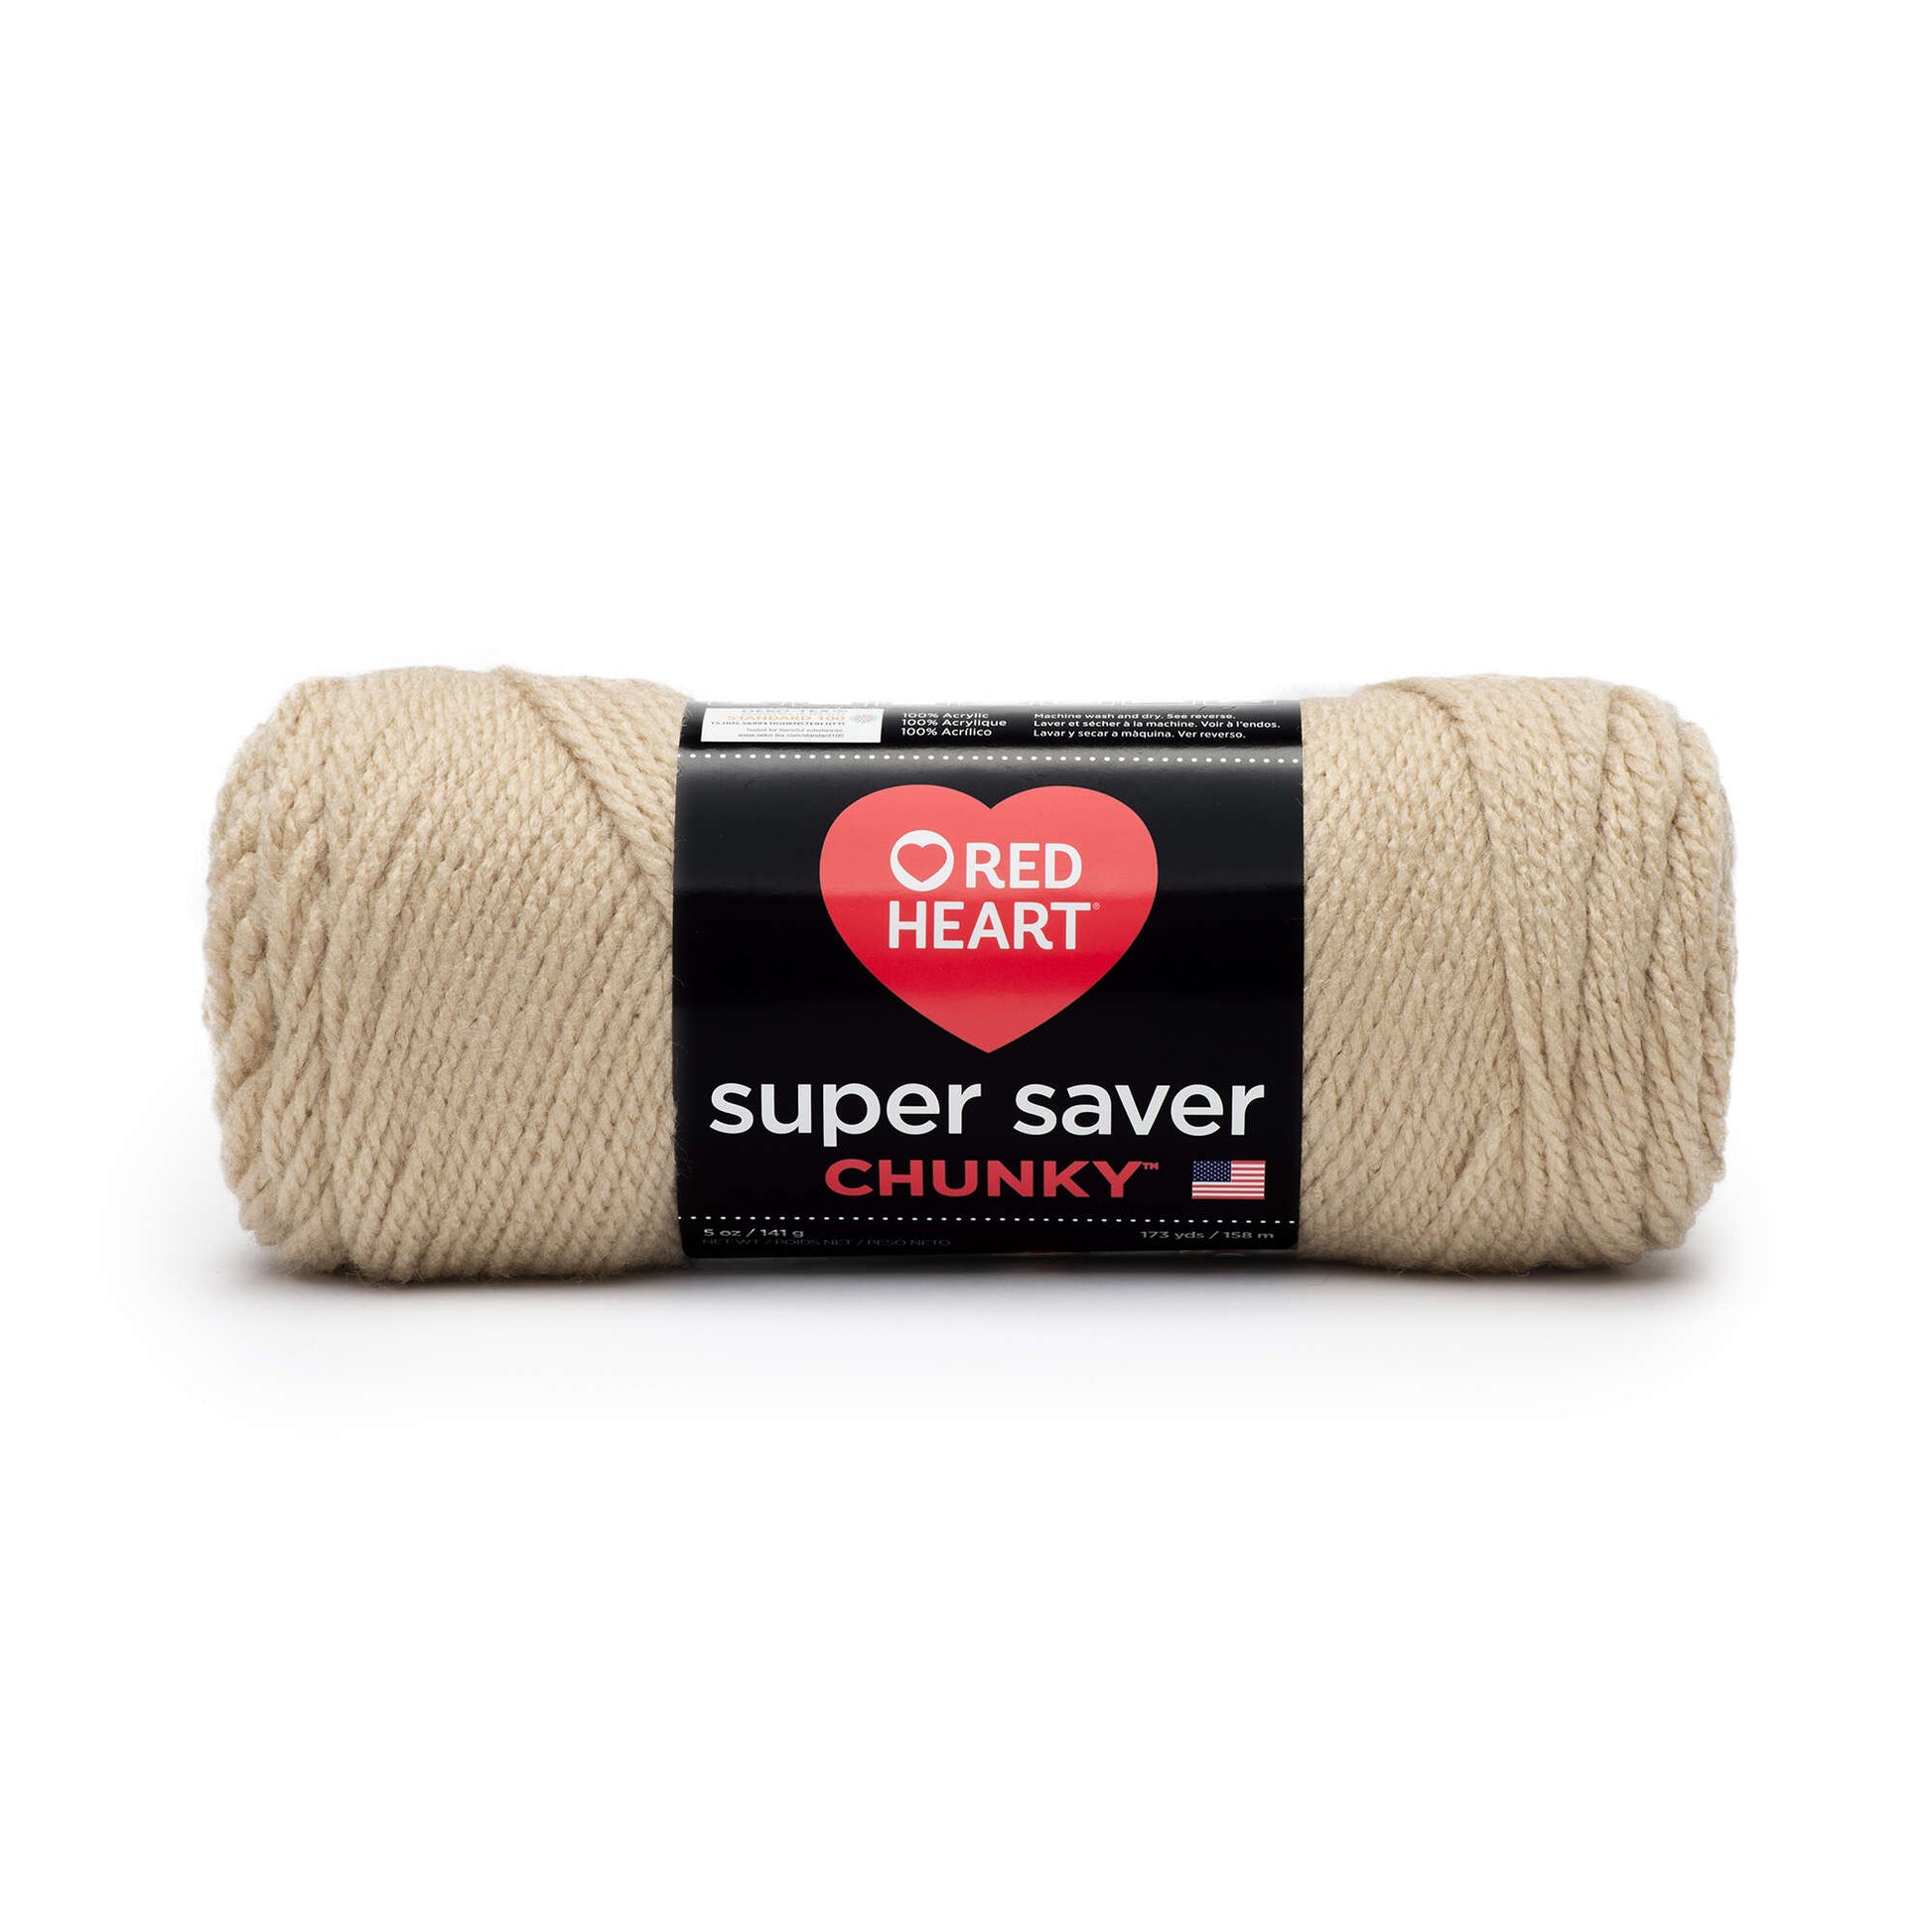 Red Heart Super Saver Chunky Yarn - Clearance shades Buff